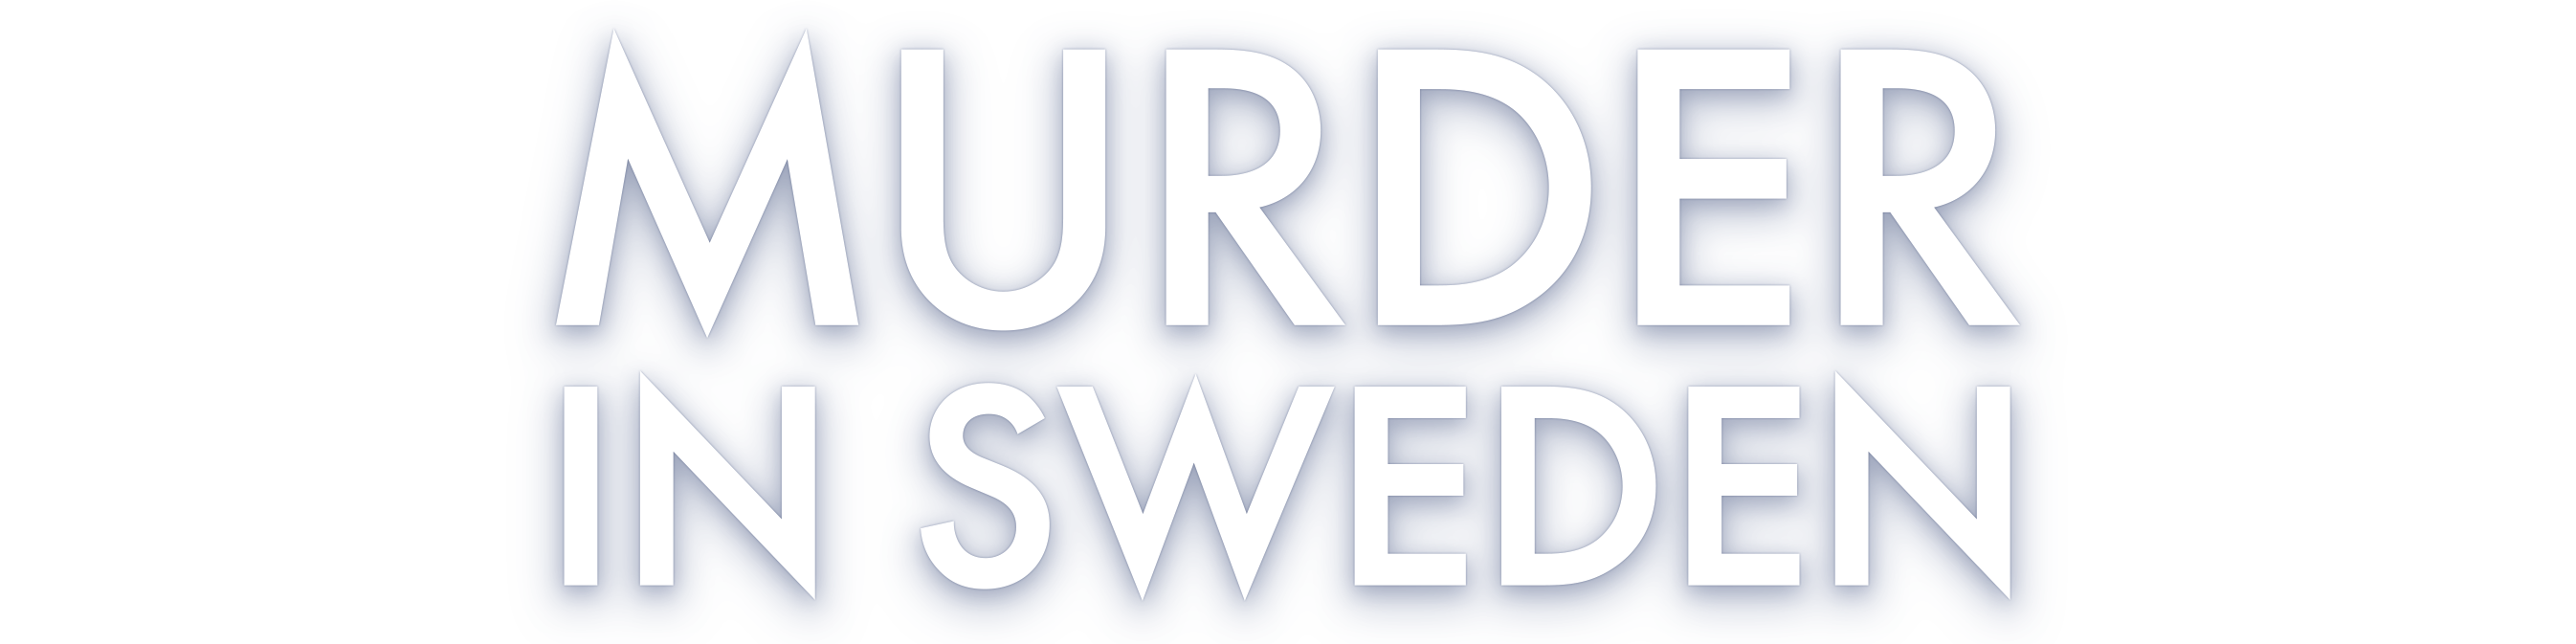 Murder in Sweden